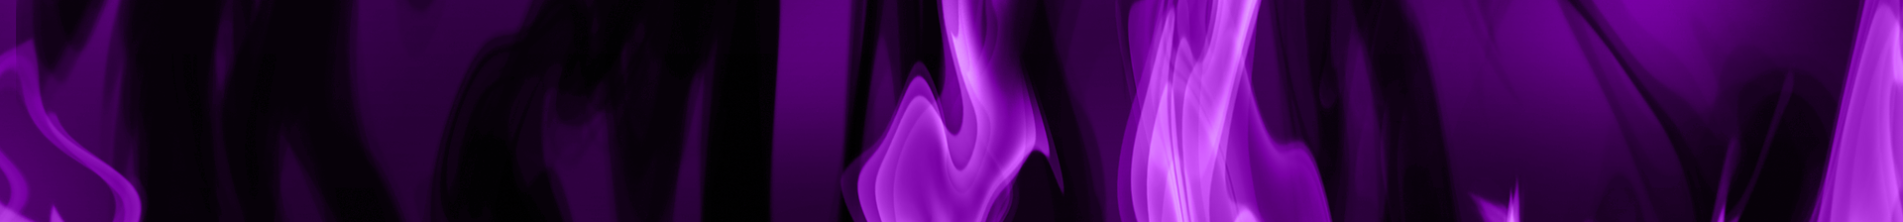 The Violet Flame of Transmutation